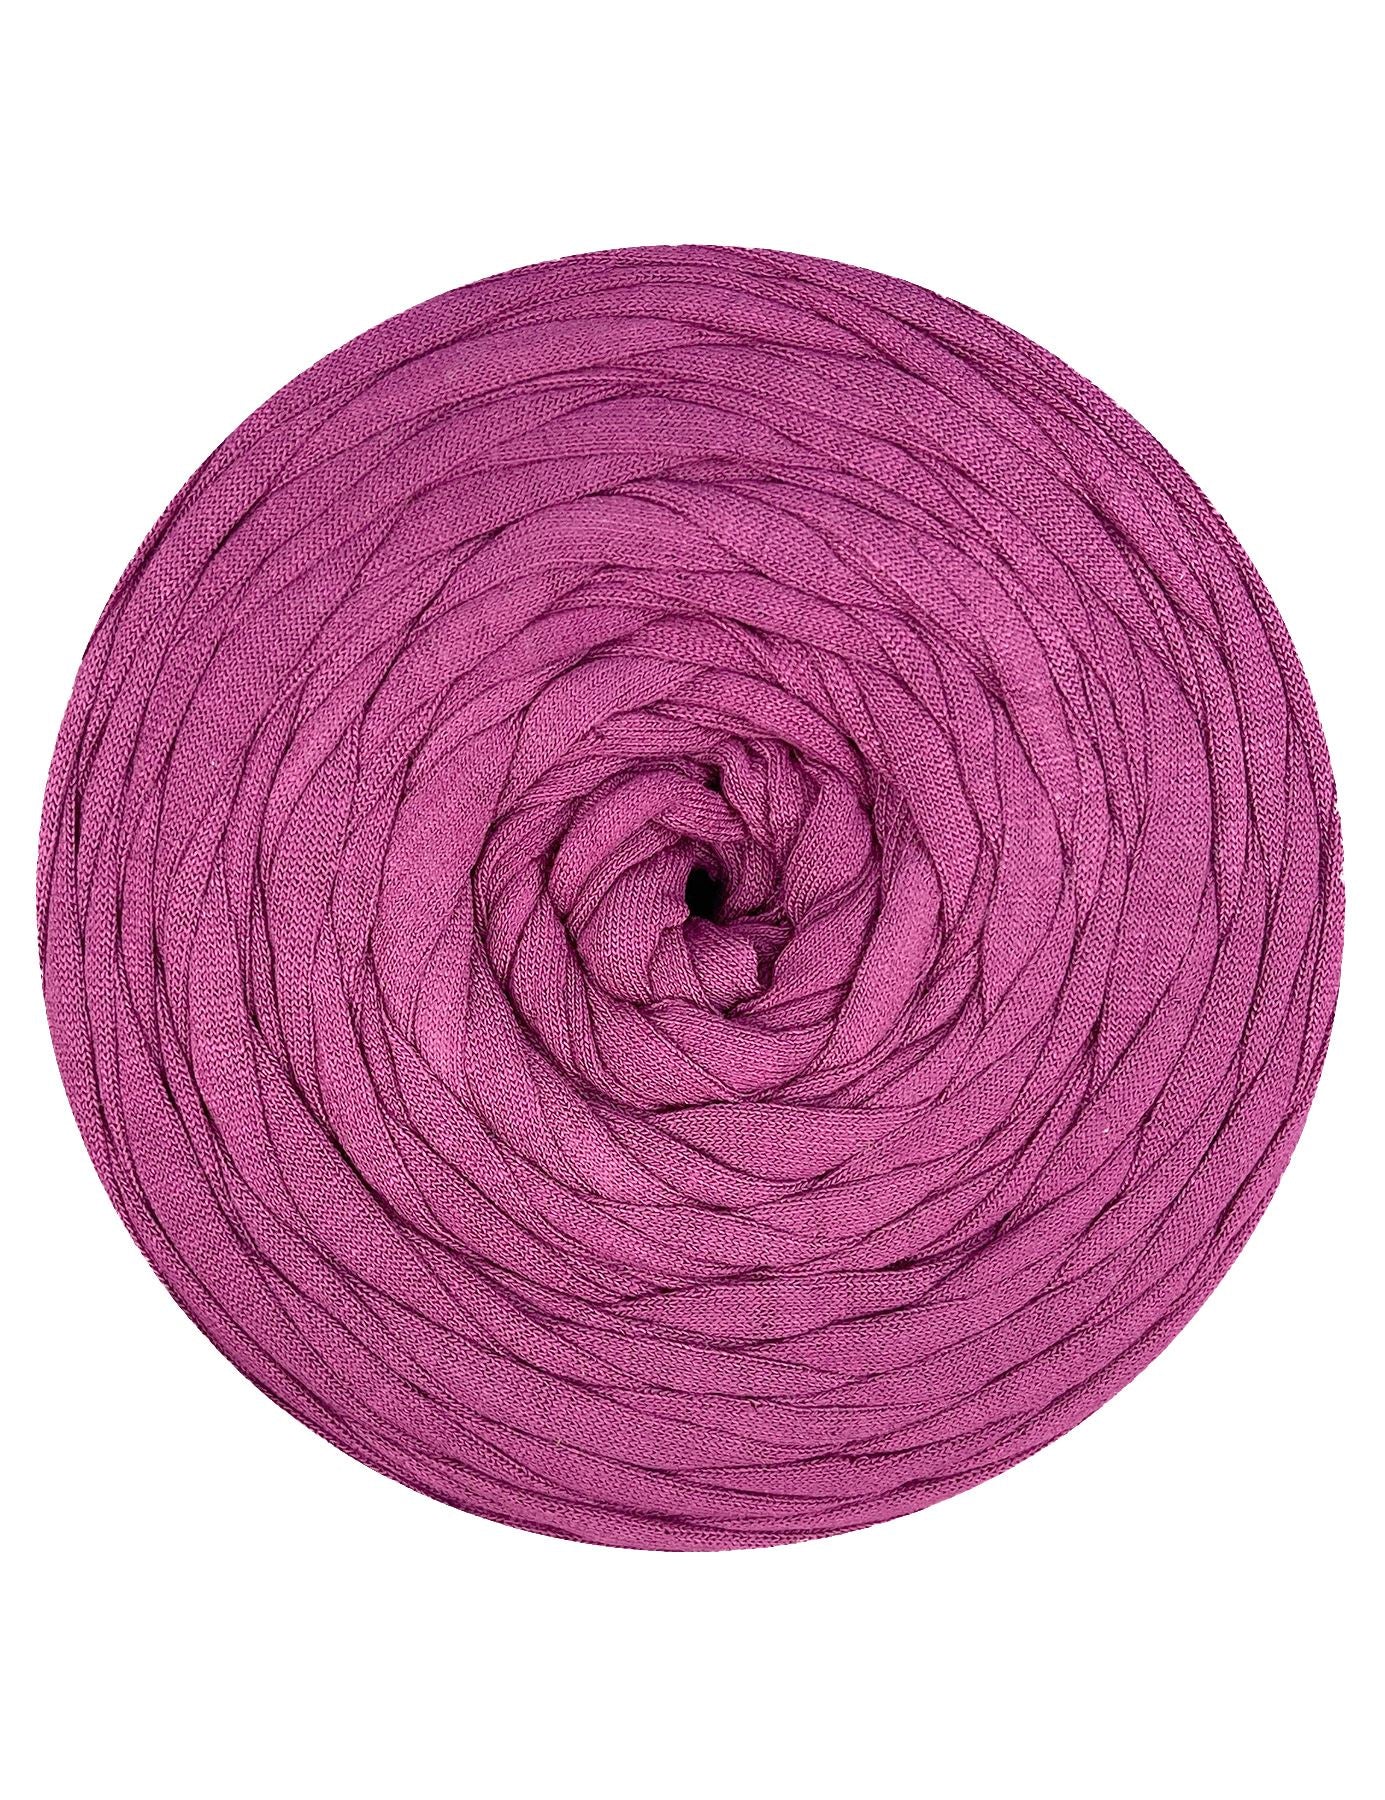 Muted magenta purple t-shirt yarn by Rescue Yarn (100-120m)